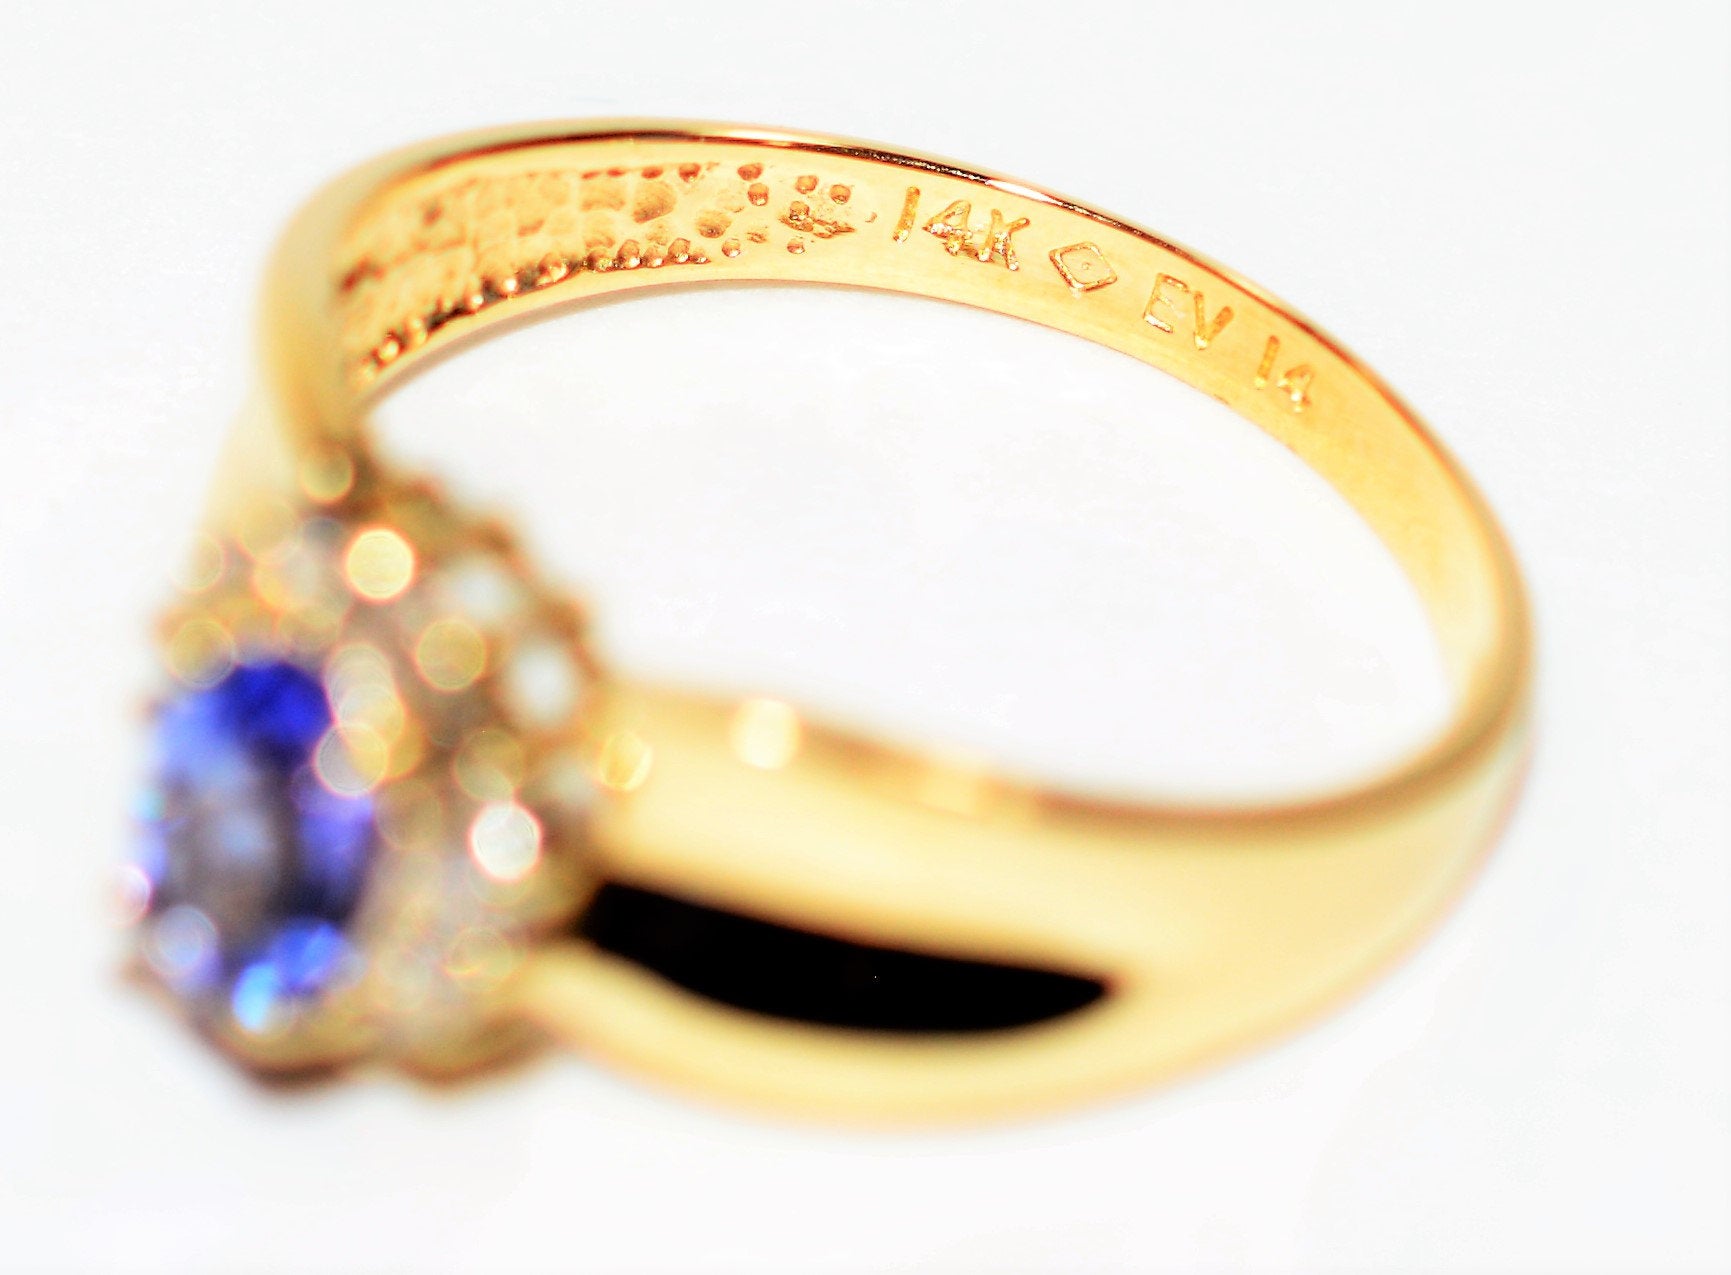 Natural Tanzanite & Diamond Ring 14K Solid Gold .64tcw Vintage Ring Statement Ring Gemstone Ring December Birthstone Ring Tanzanite Ring